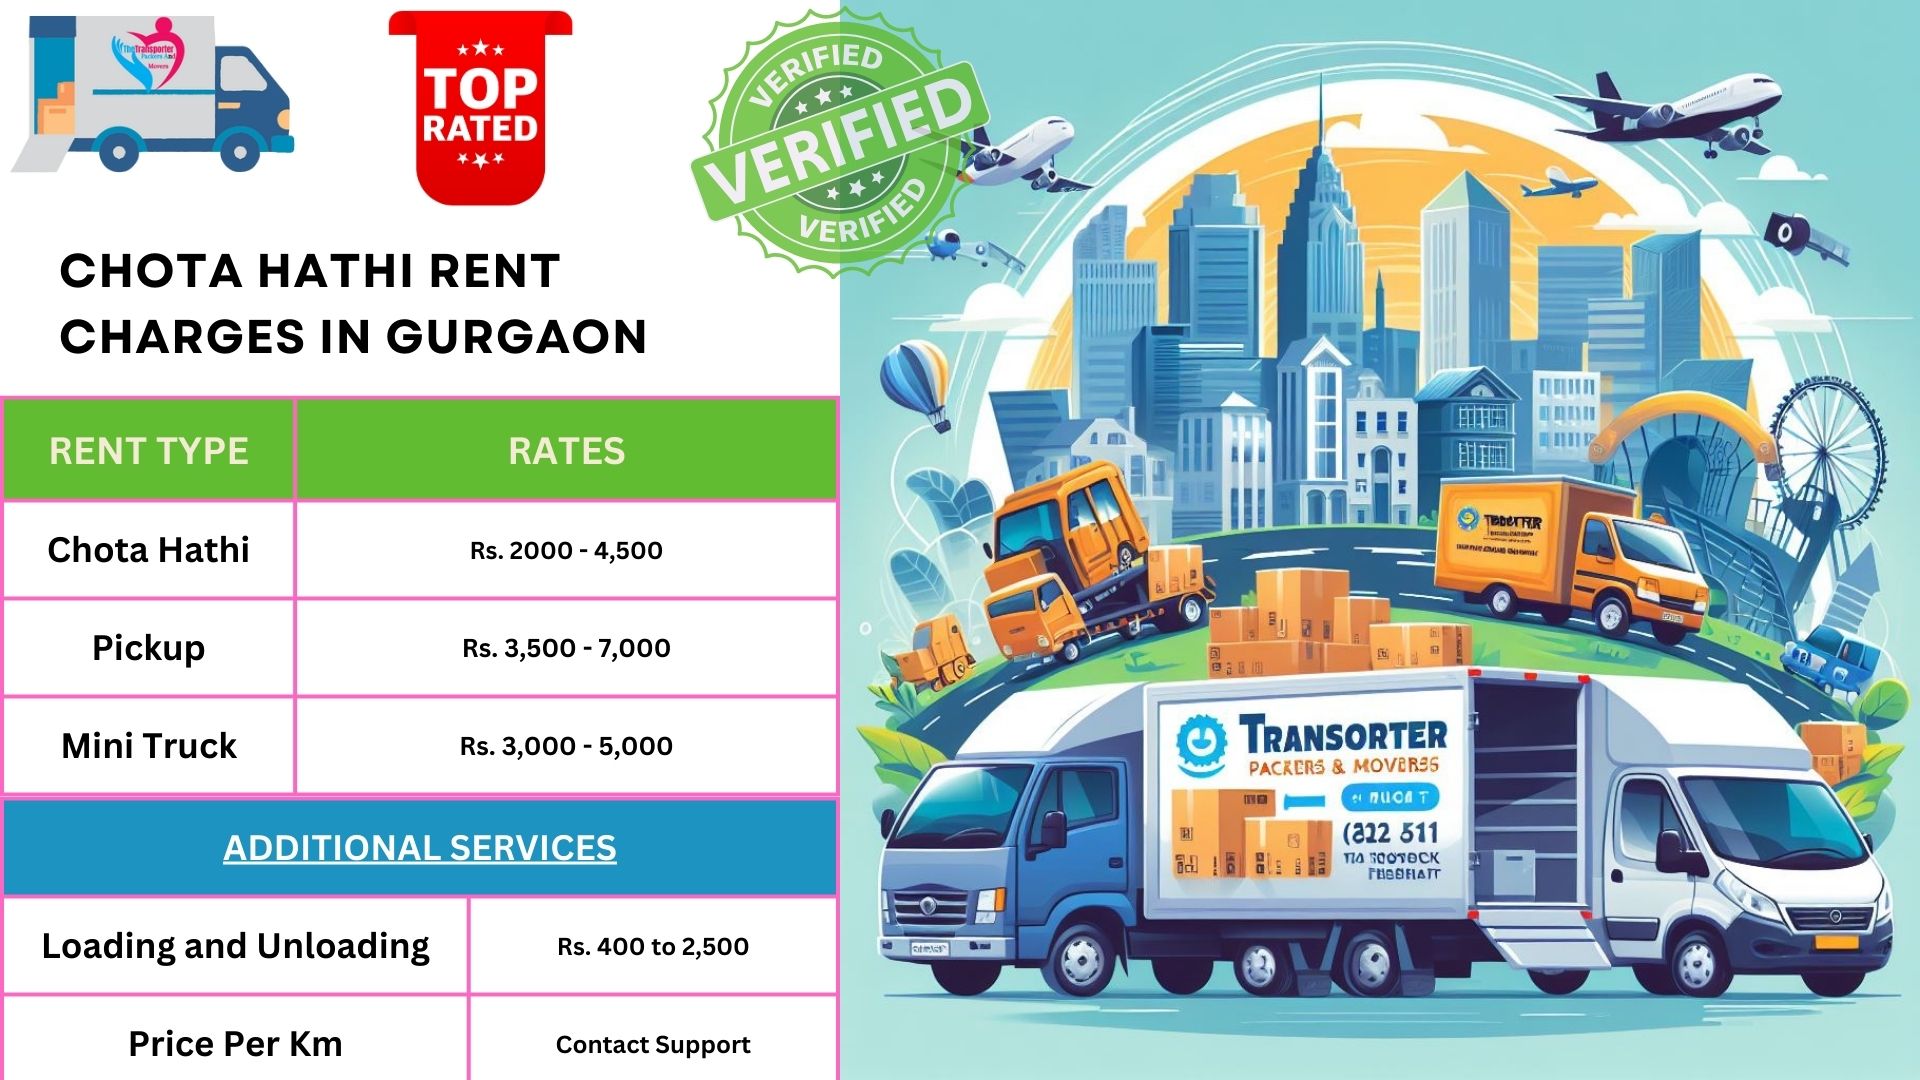 Chota hathi vehicle rate per km list in Gurgaon